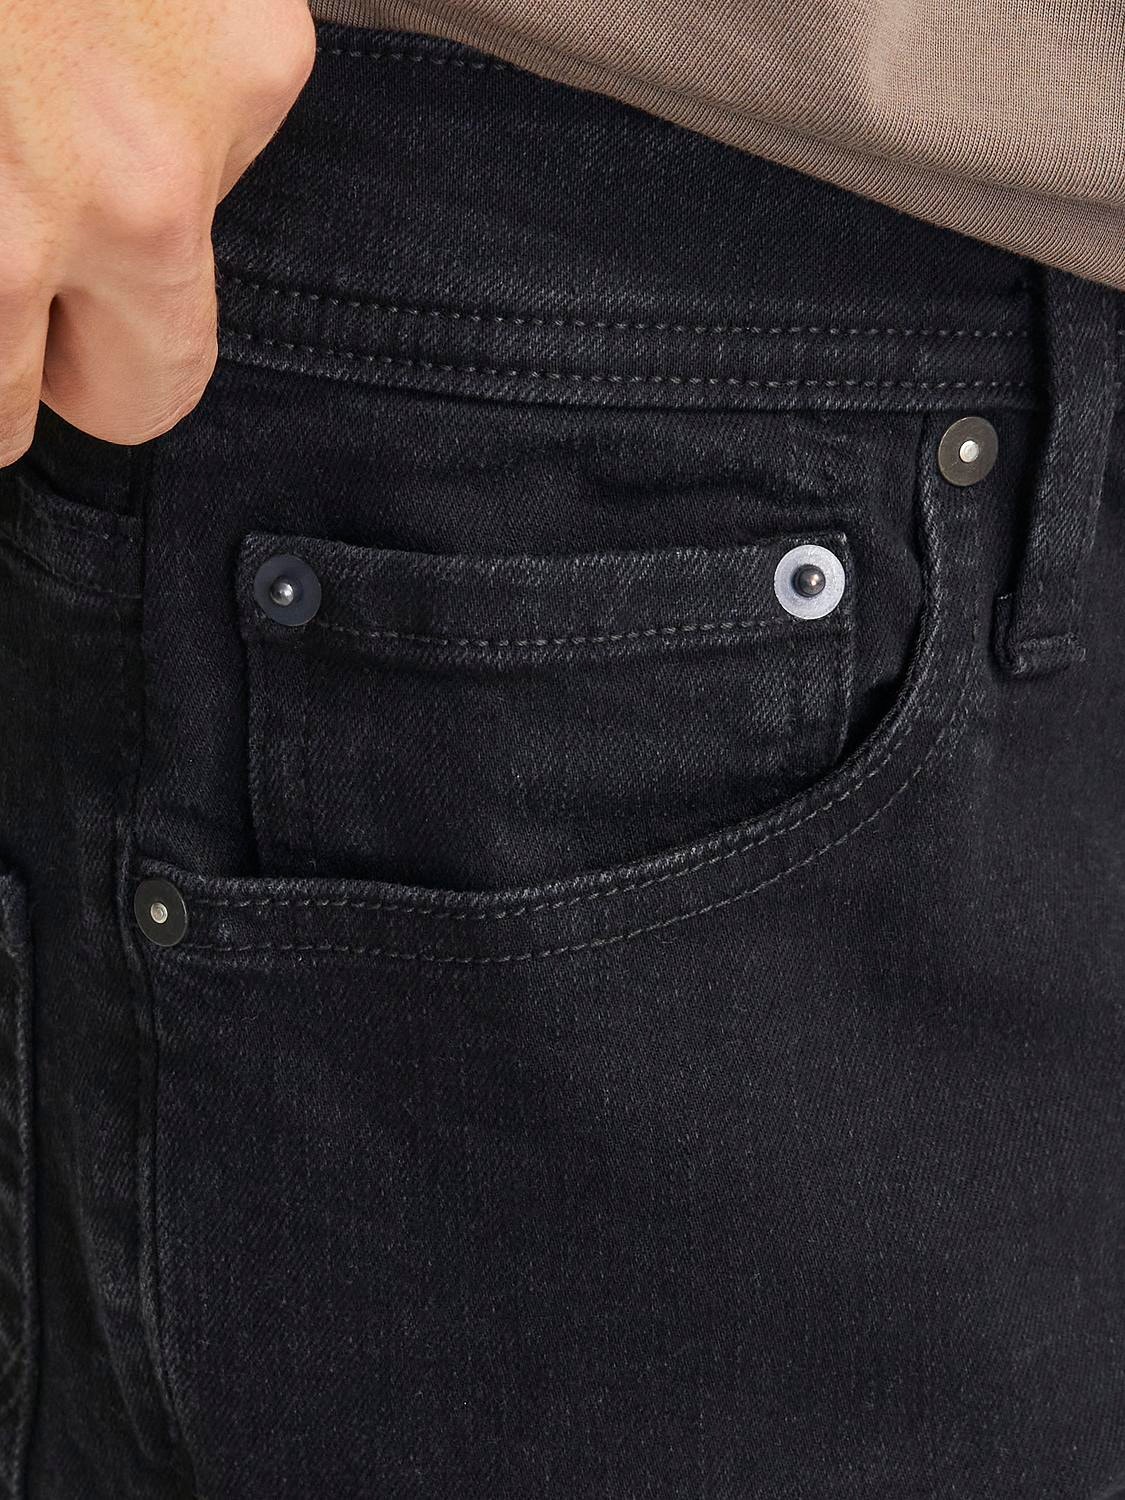 JJIMIKE JJORIGINAL SQ 356 Tapered fit jeans with 20% discount! | Jack ...